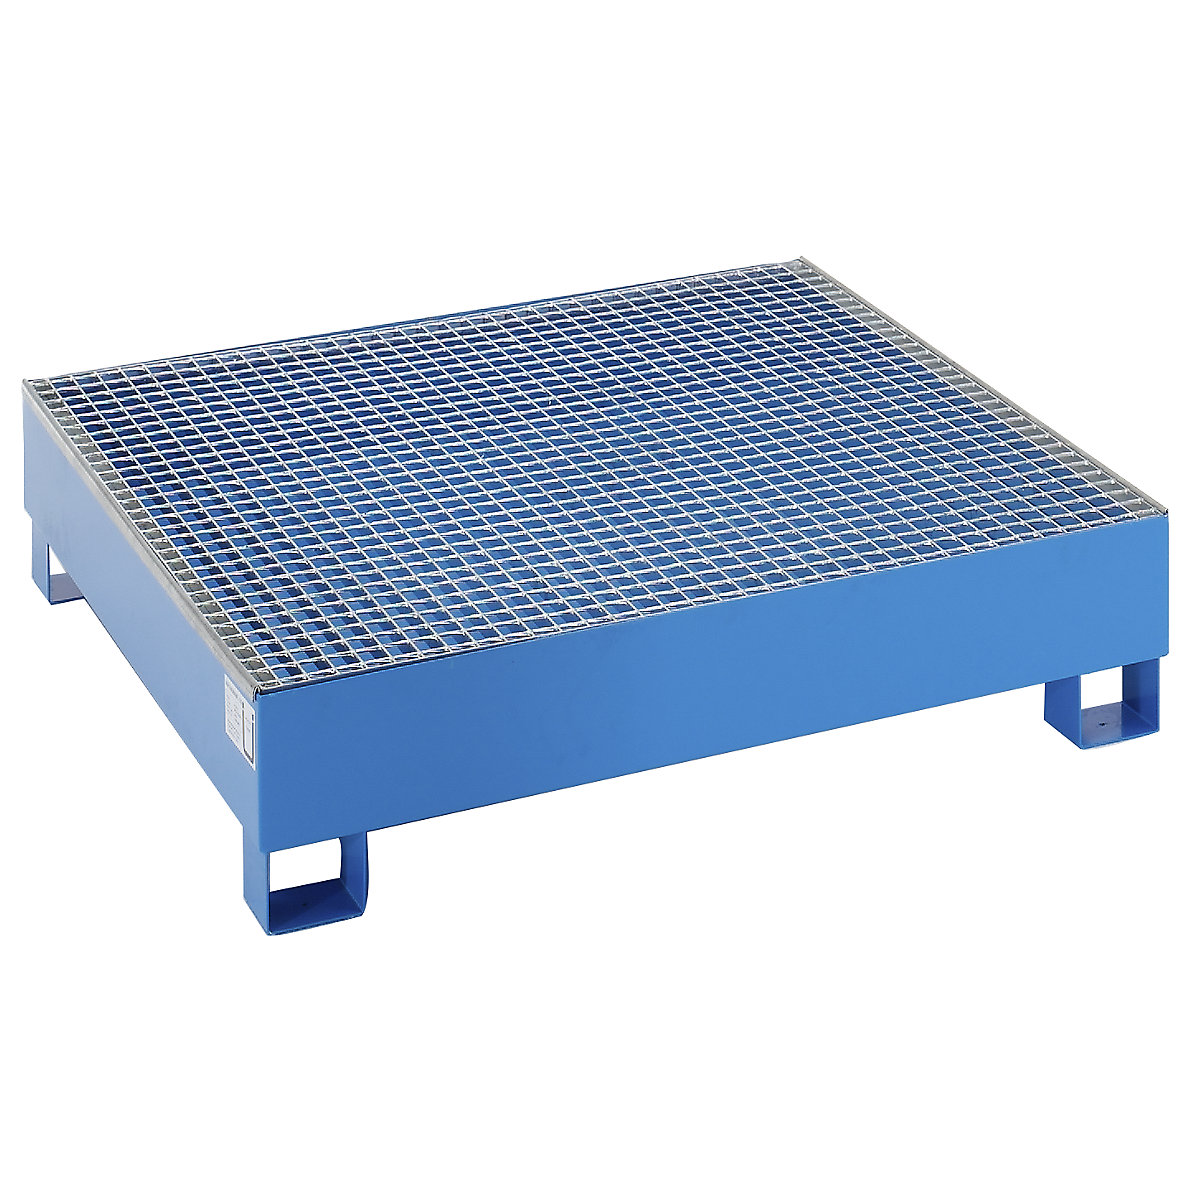 EUROKRAFTbasic Stahl-Auffangwanne für 200-l-Fässer, LxBxH 1200 x 1200 x 285 mm, mit Zulassung, blau pulverbeschichtet, mit Gitterrost